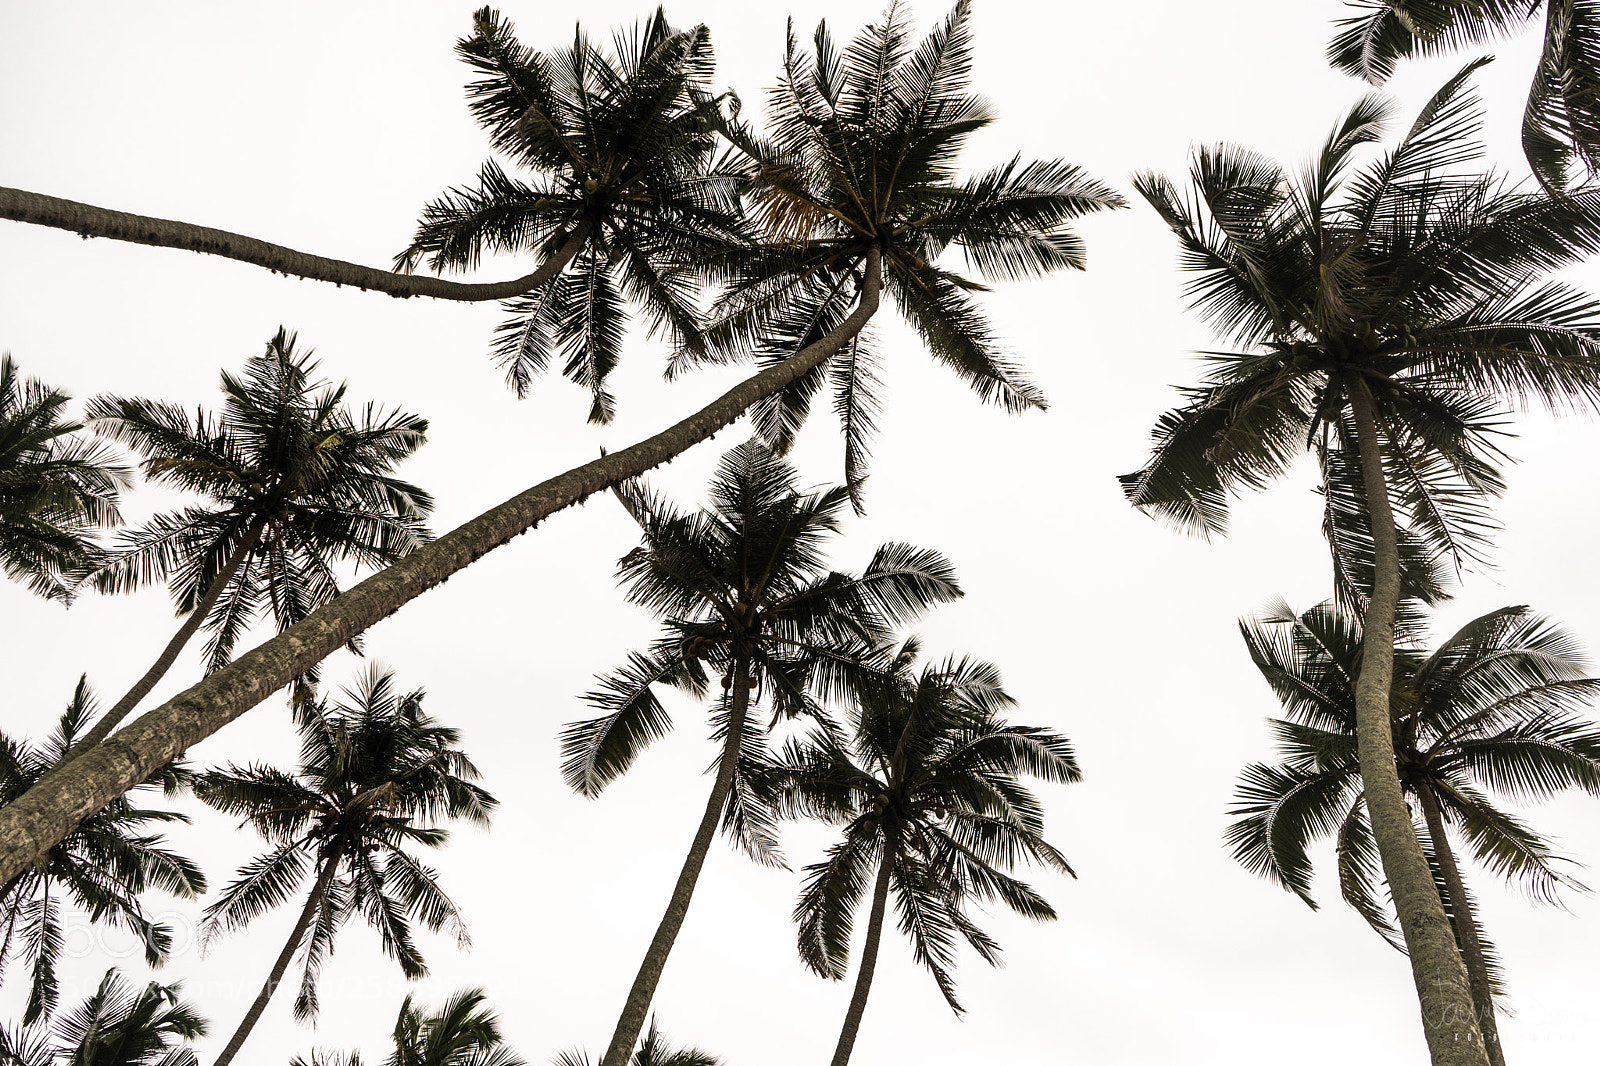 Sony a7 sample photo. Sri lanka mirissa coconut photography